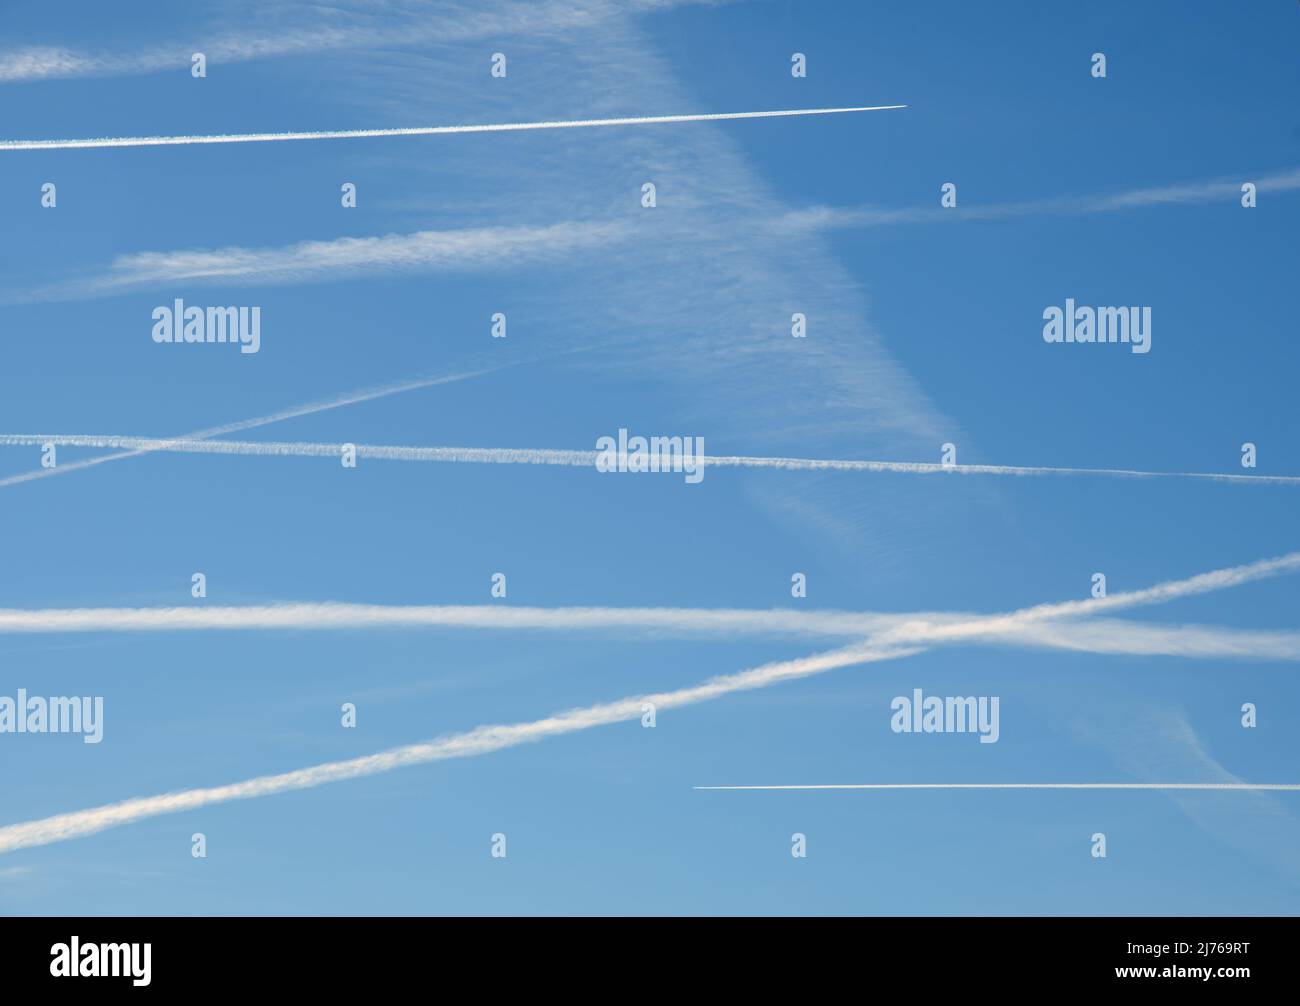 Varios aviones se contrainan cruzando el cielo azul en un estado de sobrevuelo, con dos aviones haciendo activamente nuevos senderos en la parte superior e inferior, a la dirección opuesta Foto de stock